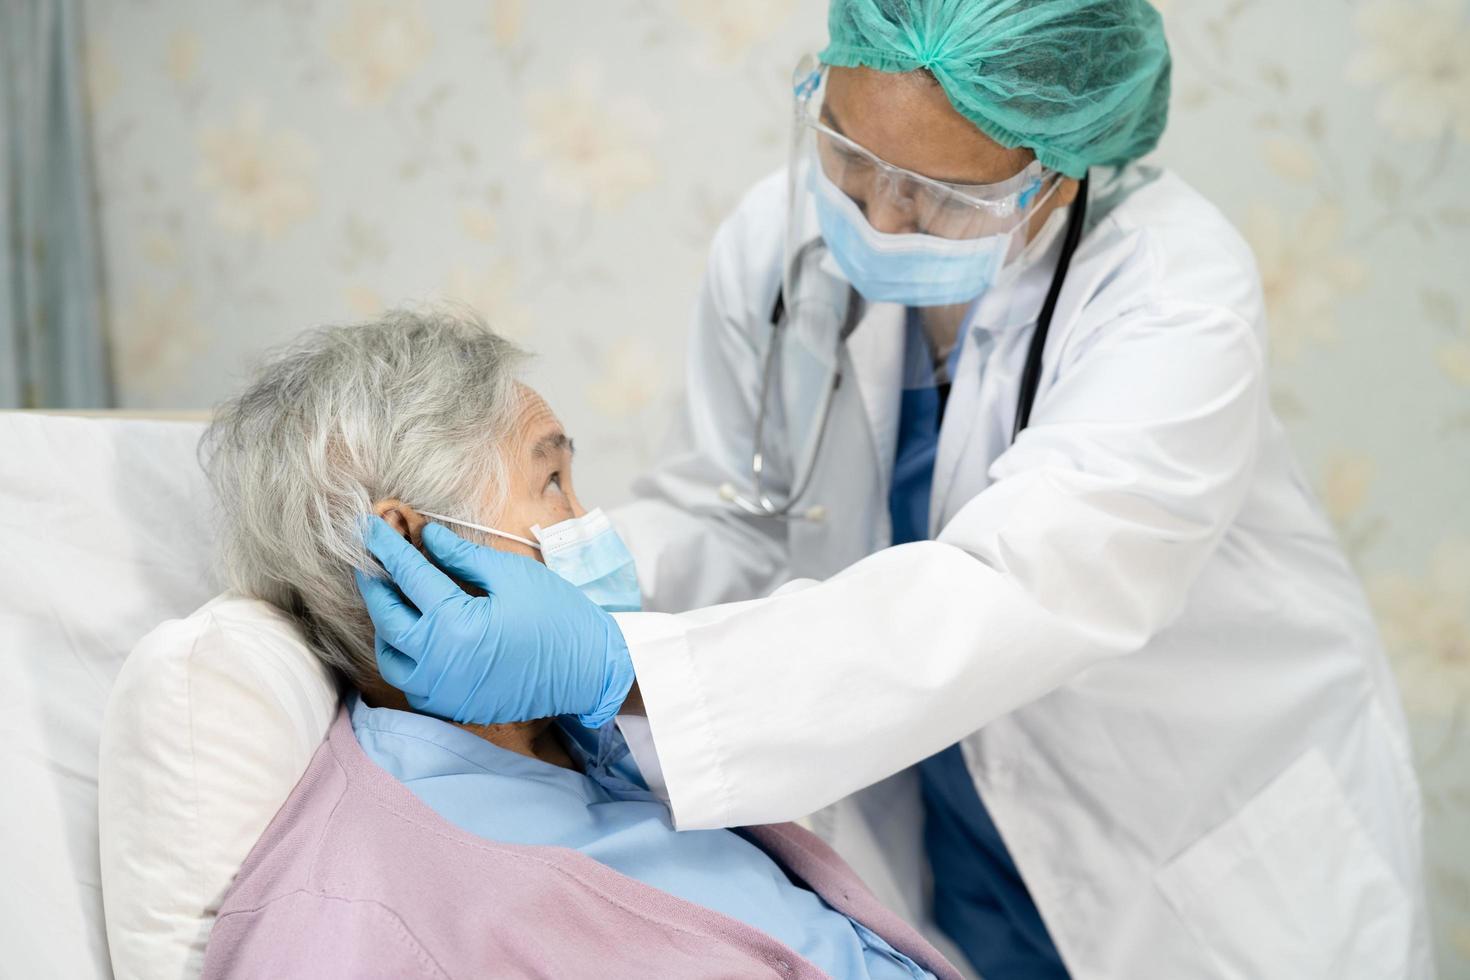 médico usando estetoscópio para verificar paciente mulher idosa ou idosa asiática usando máscara facial no hospital para proteção contra infecção covid 19 coronavírus foto